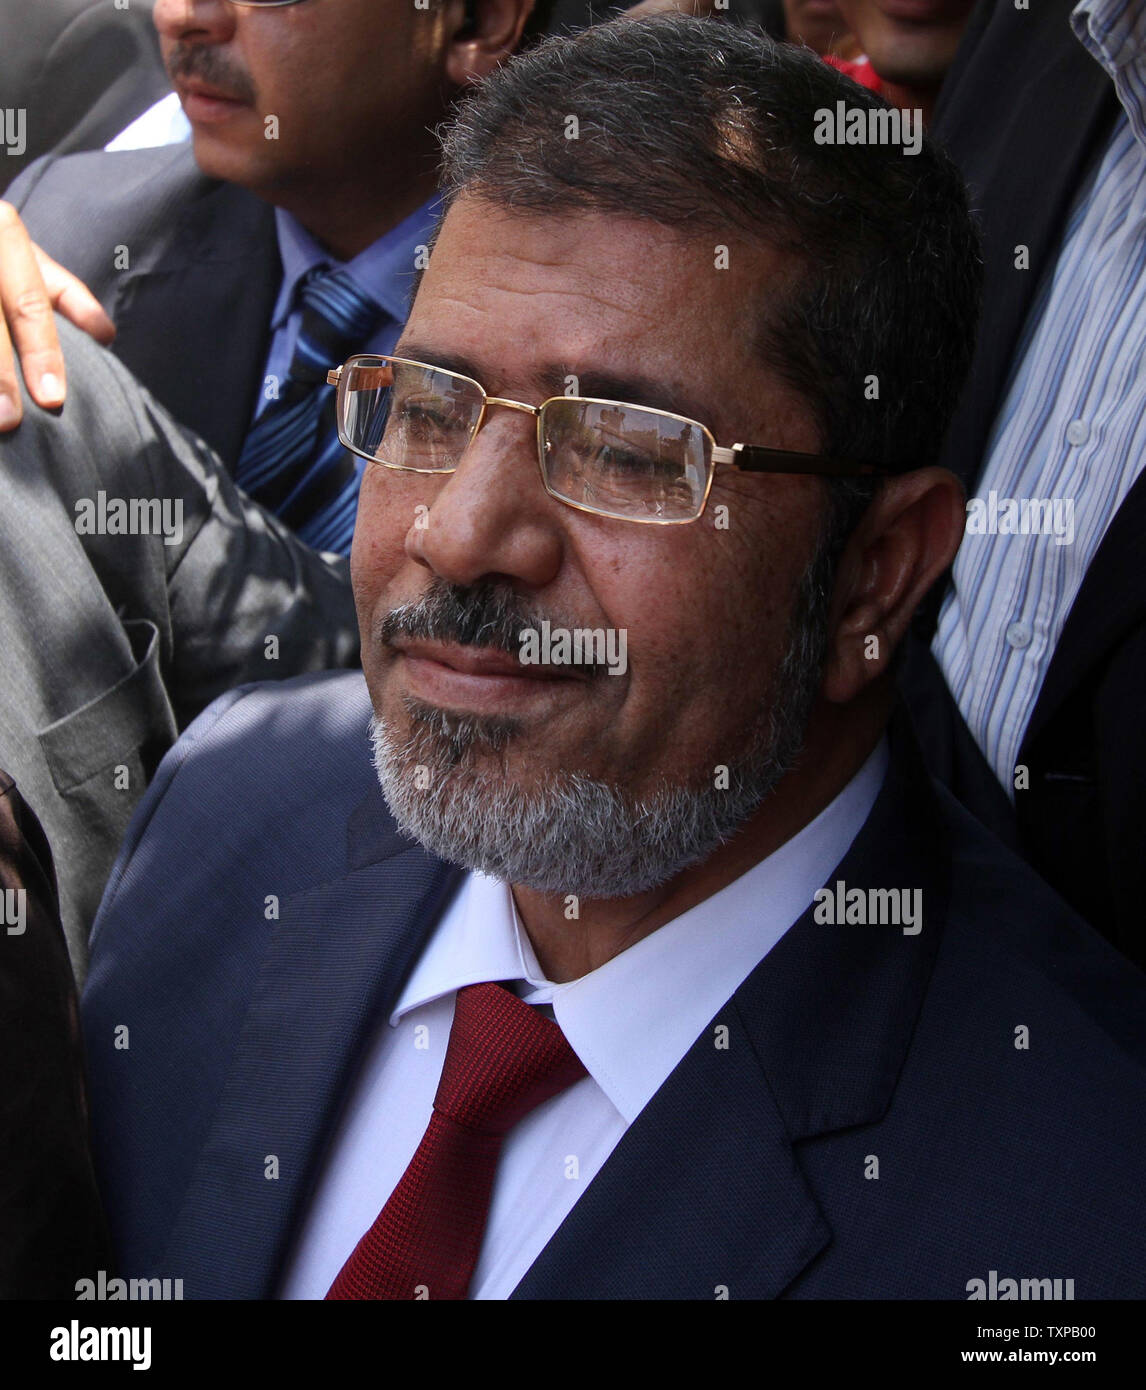 El candidato presidencial Mohamed Morsy de la Hermandad Musulmana llega a depositar su voto en una mesa electoral en un colegio de Al-Sharqya, a 60 km (37 millas) al noreste de El Cairo en Egipto, 16 de junio de 2012. Egipto la primera elección presidencial libre concluye este fin de semana en una segunda vuelta entre los candidatos de la Hermandad Musulmana, Mohamed Morsy y Ahmed Shafik, último primer ministro del derrocado líder egipcio Hosni Mubarak. UPI/Ahmed Jomaa Foto de stock